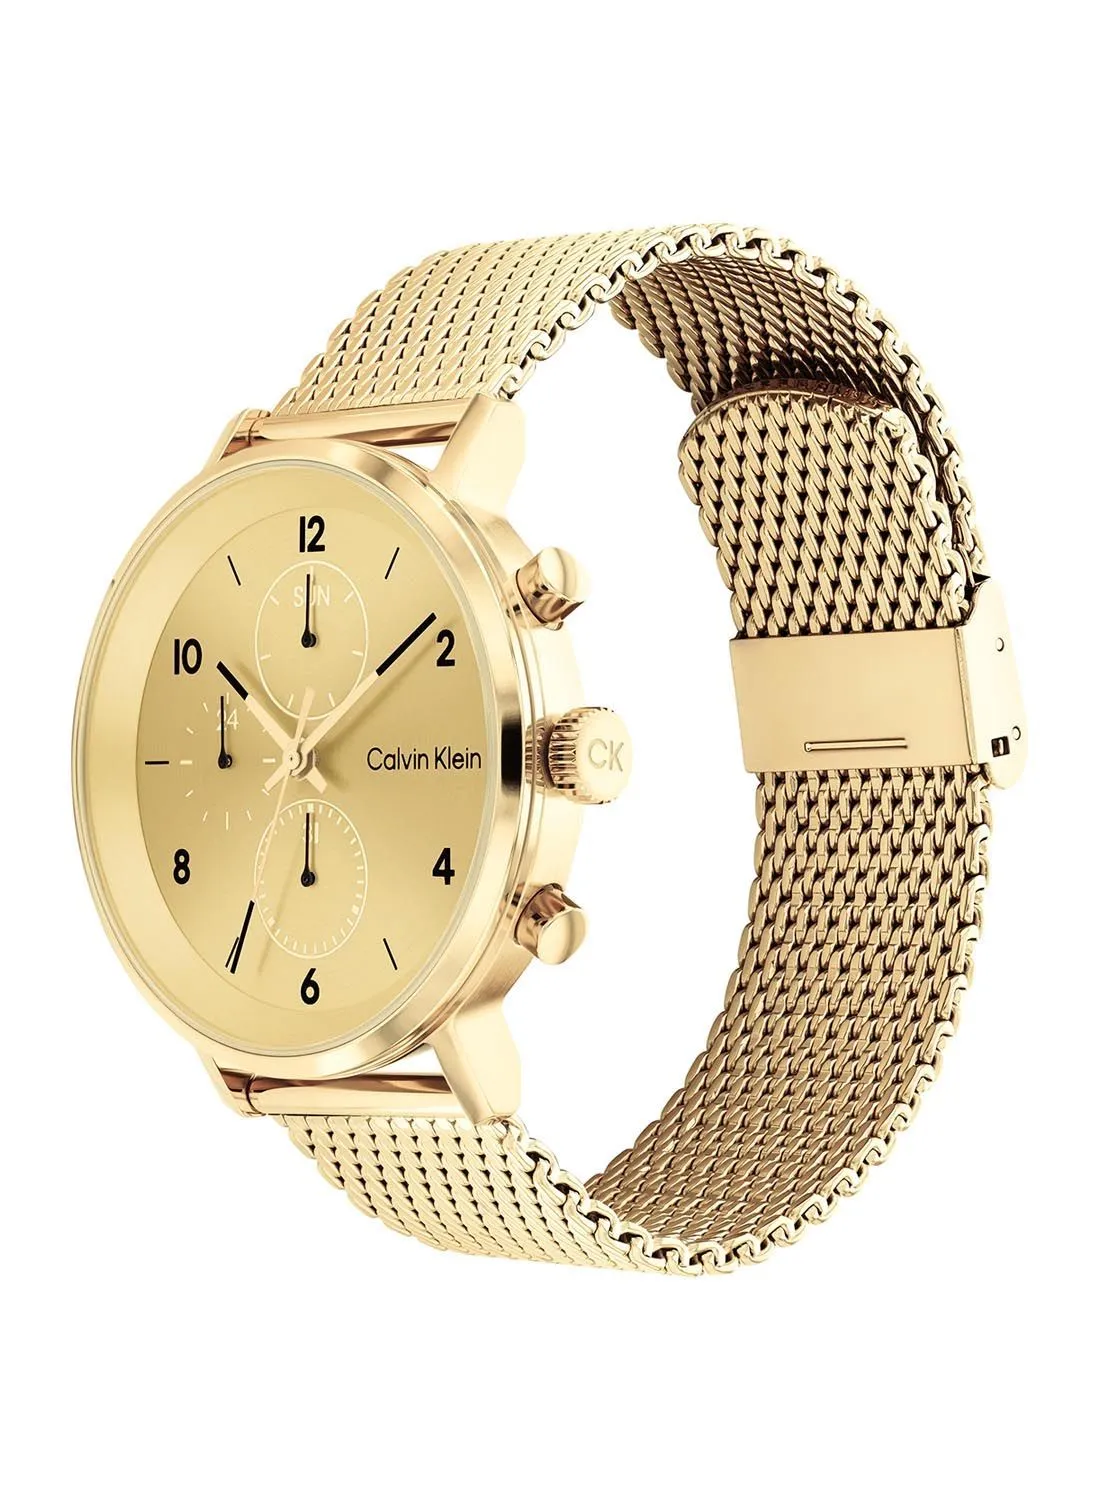 CALVIN KLEIN Analog Round Waterproof  Wrist Watch With Gold Strap 25200109